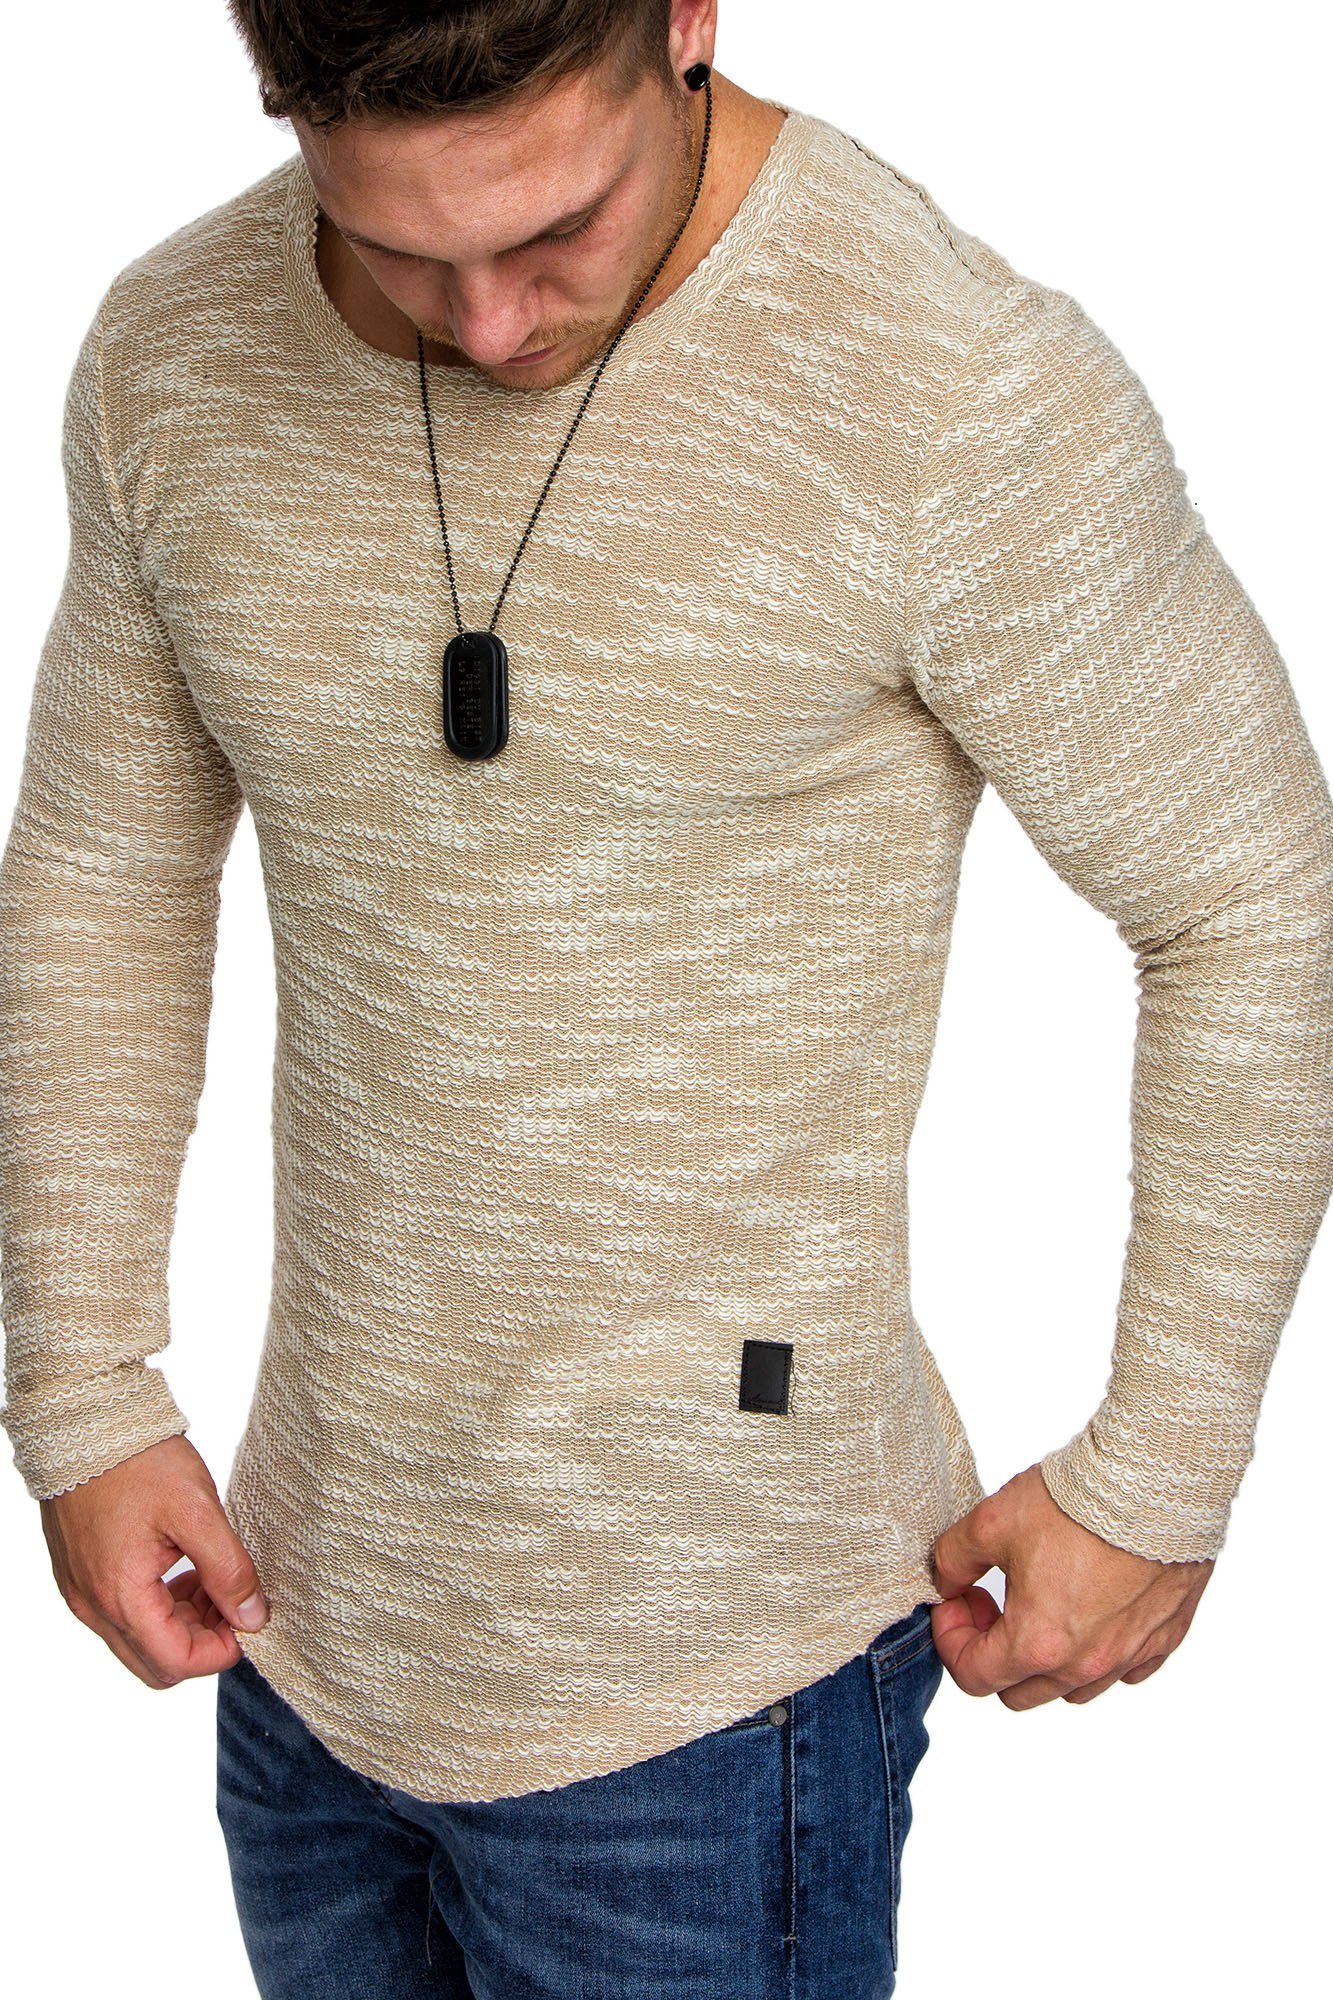 Amaci&Sons Sweatshirt NAMPA Sweatshirt mit Rundhalsausschnitt Herren Pullover Vintage Sweatshirt Hoodie Rundhalsausschnitt Beige | Sweatshirts